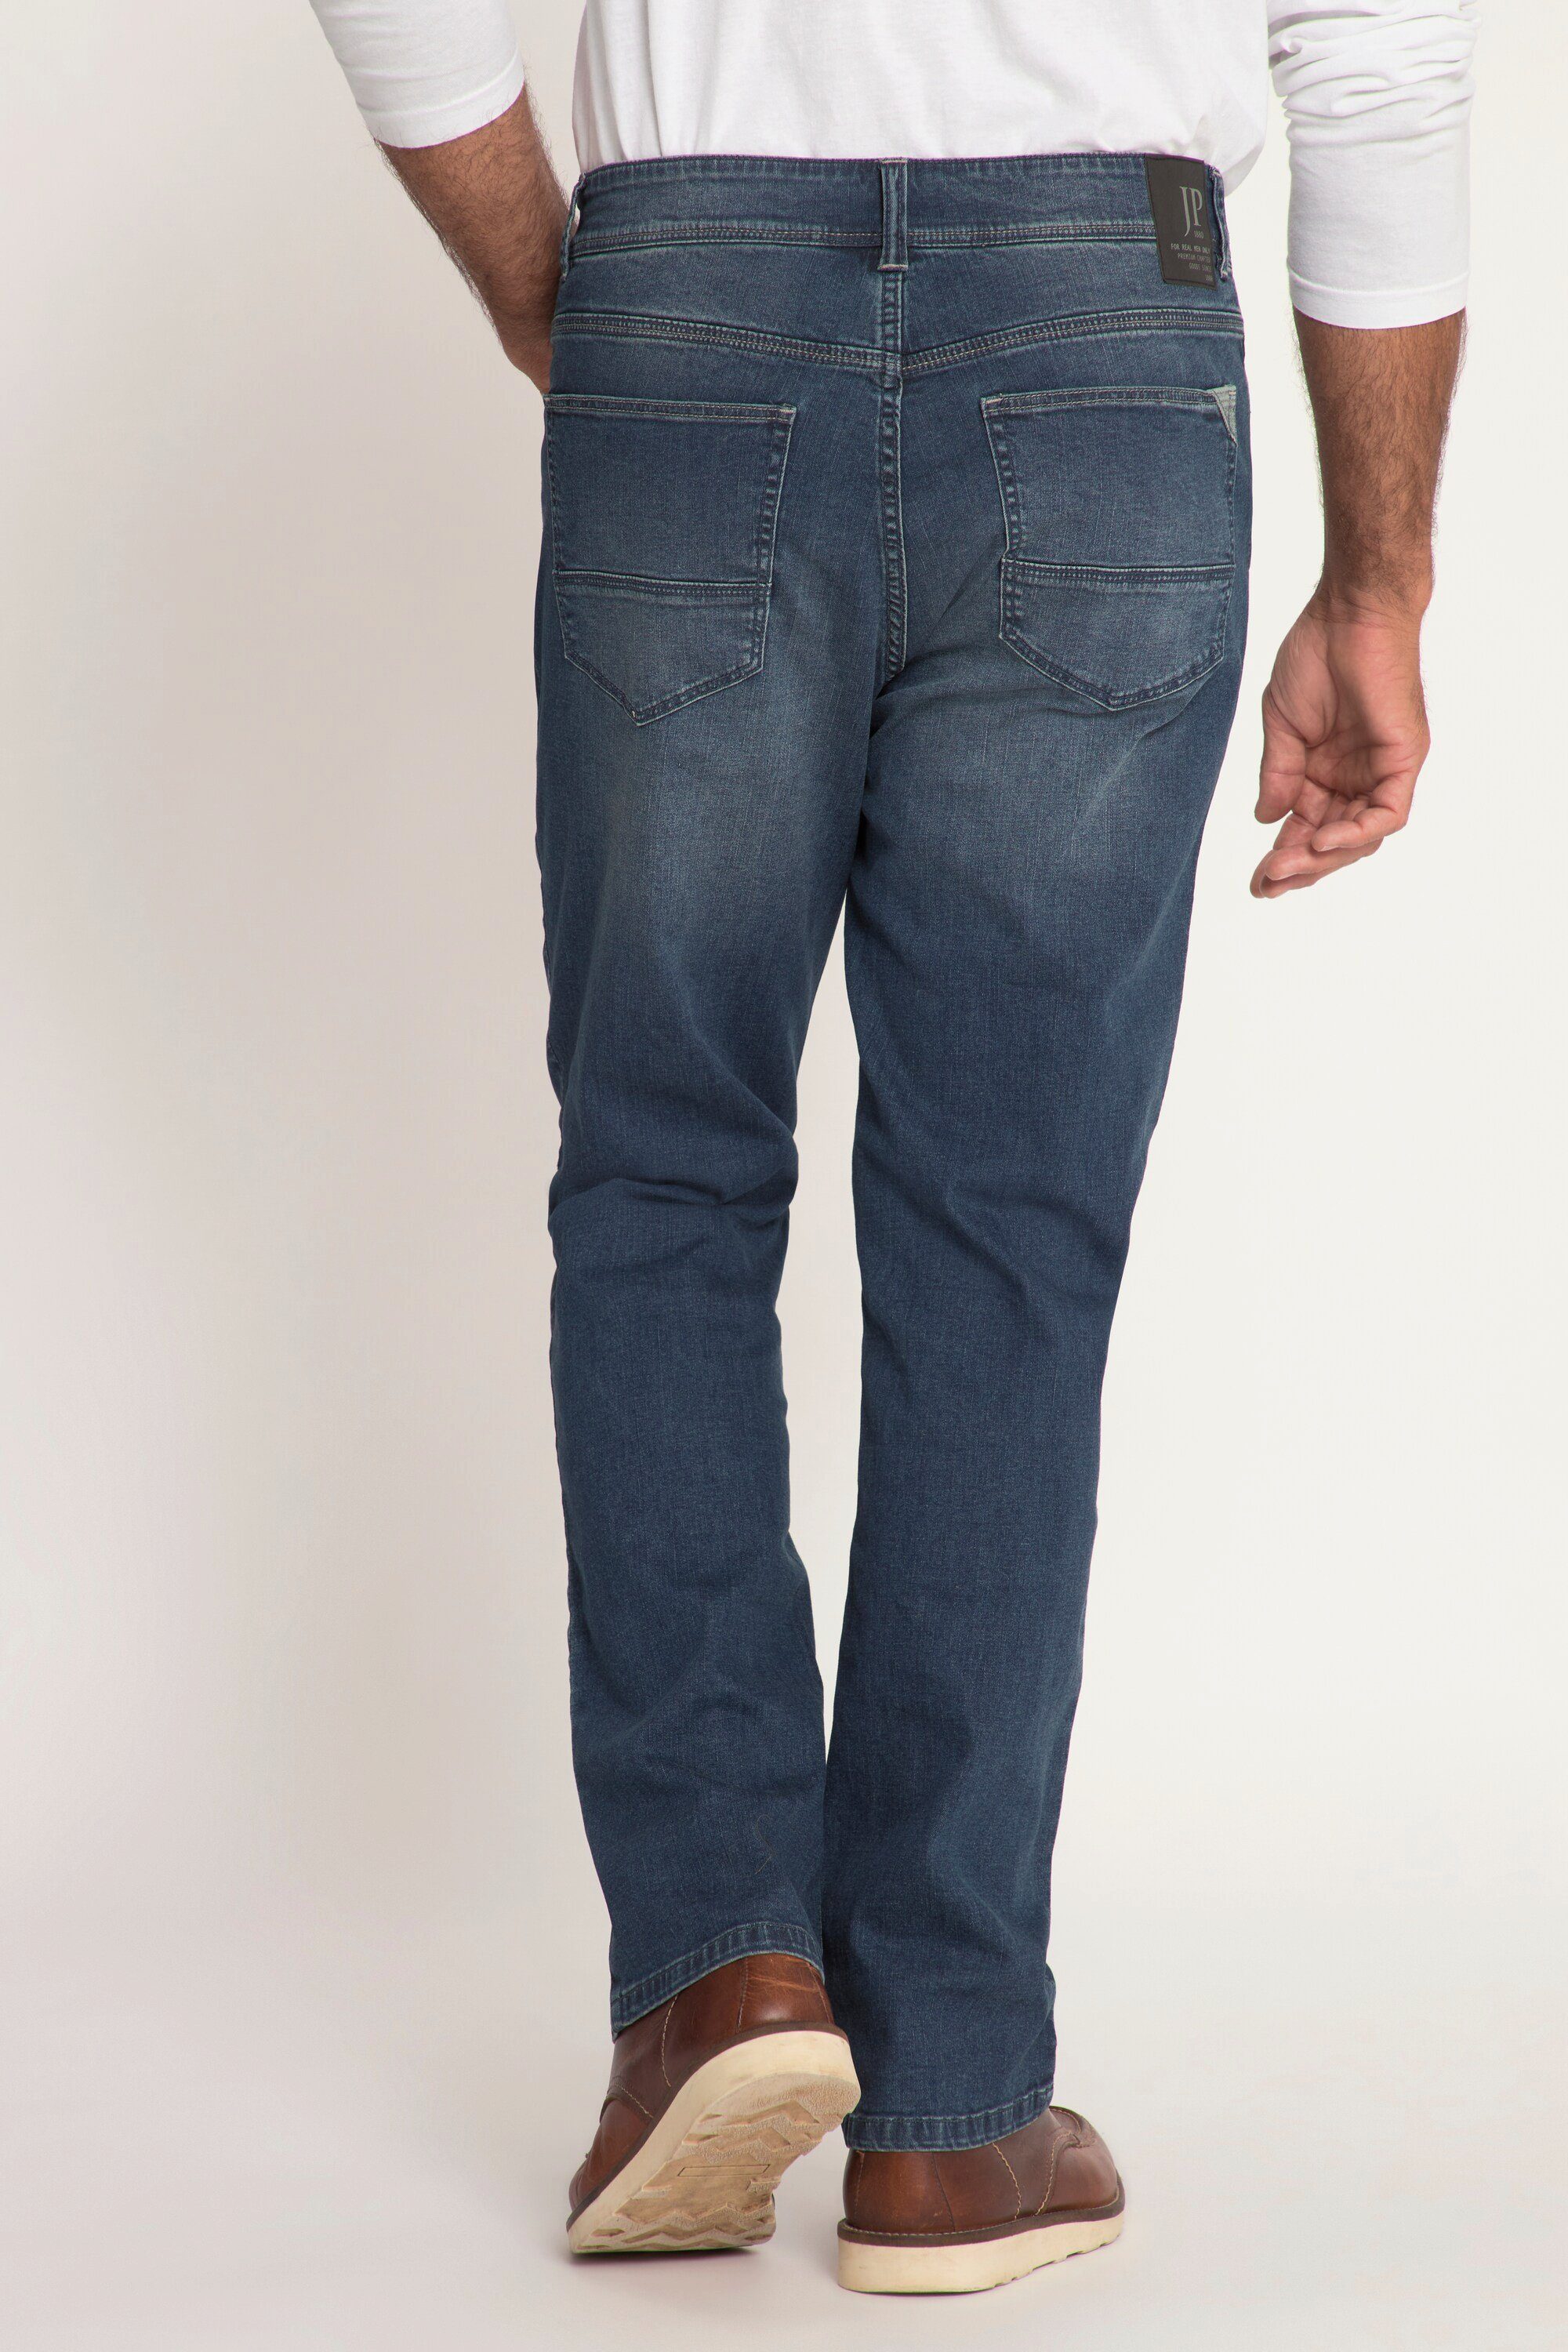 Fit Bauchfit 5-Pocket lightweight denim Cargohose Regular JP1880 Jeans blue dark